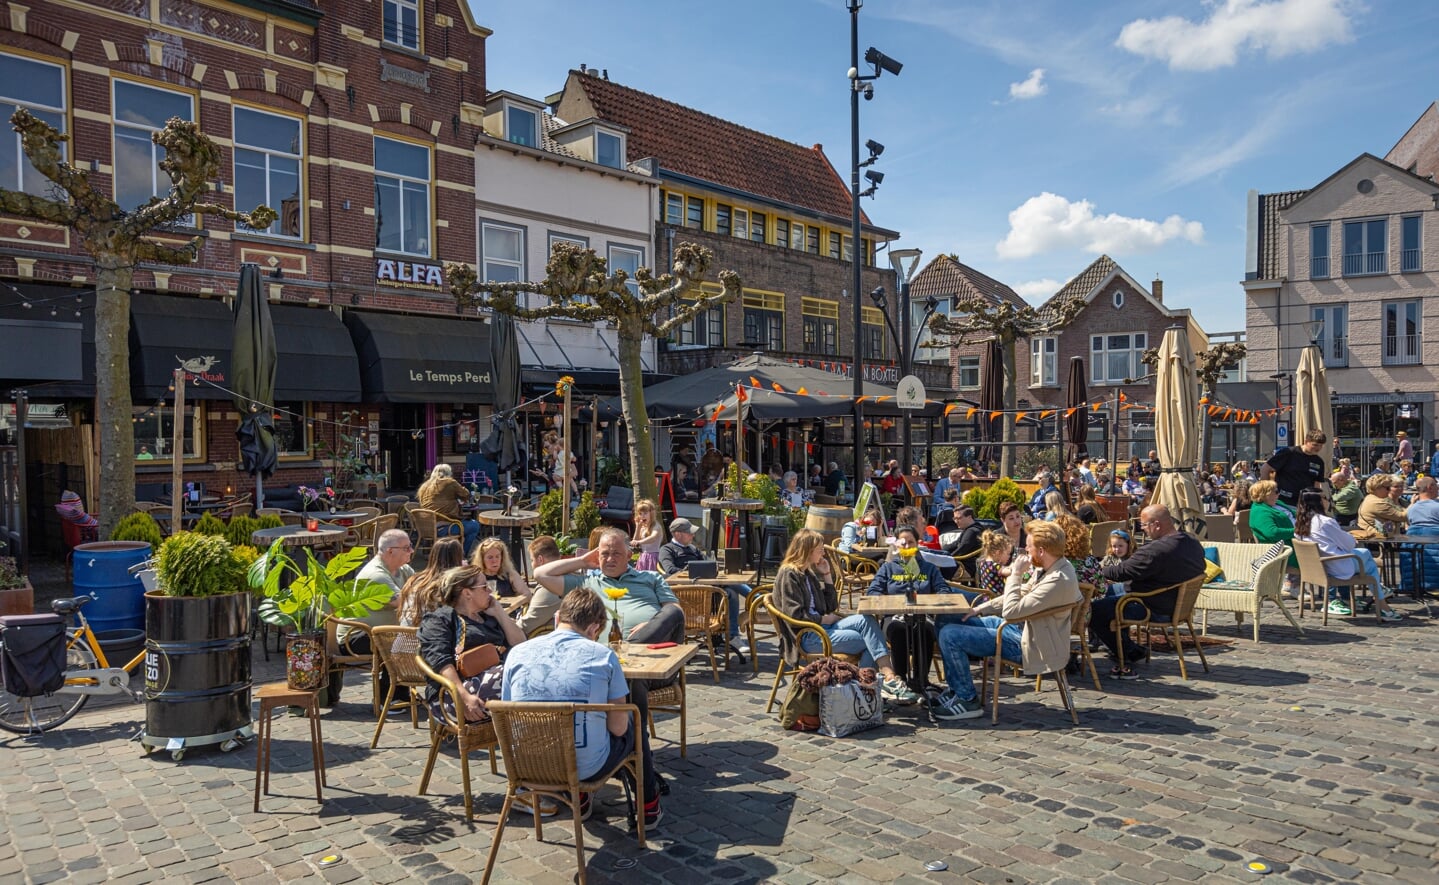 Marktkramen verspreid over het centrum van Boxtel brachten zondag honderden bezoekers op de been. De Oranjebraderie maakte na enkele jaren afwezigheid een succesvolle rentree.